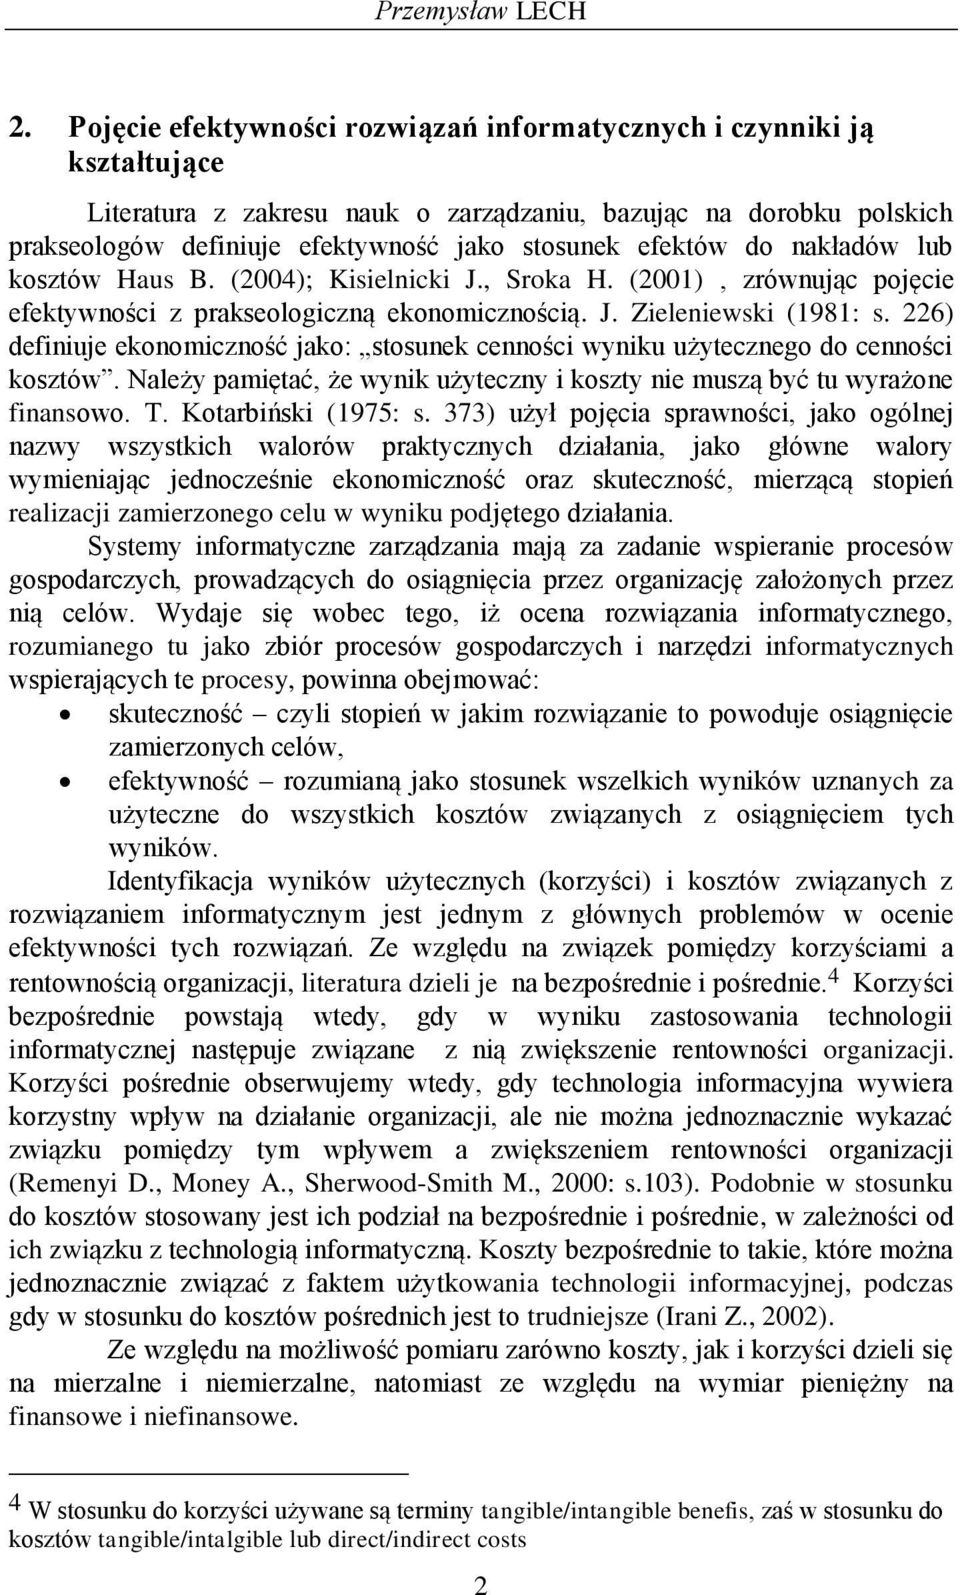 do nakładów lub kosztów Haus B. (2004); Kisielnicki J., Sroka H. (2001), zrównując pojęcie efektywności z prakseologiczną ekonomicznością. J. Zieleniewski (1981: s.